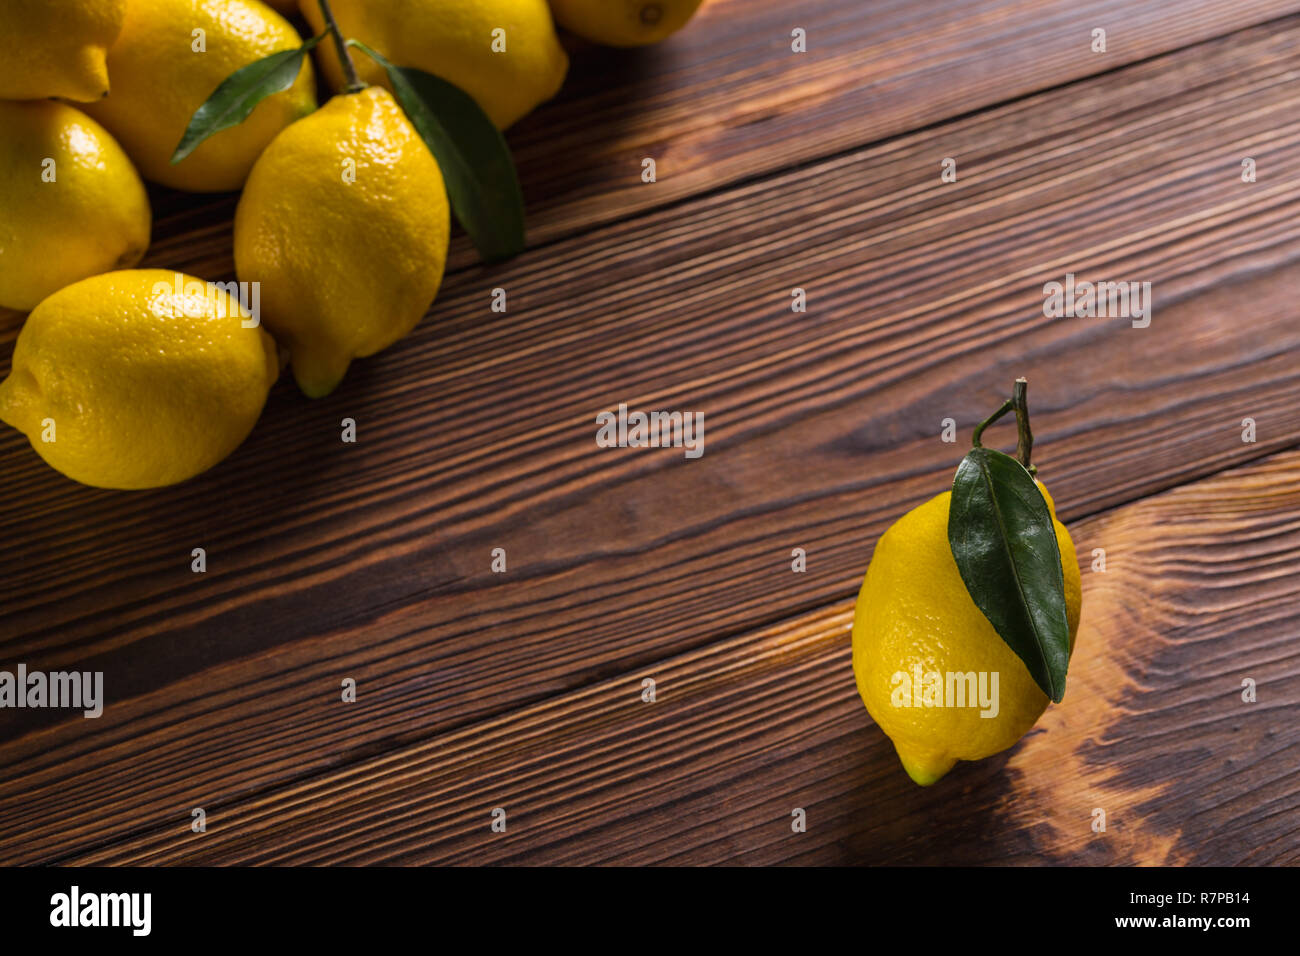 Citrons jaunes fraîches avec des feuilles se situent sur une table en bois. Banque D'Images